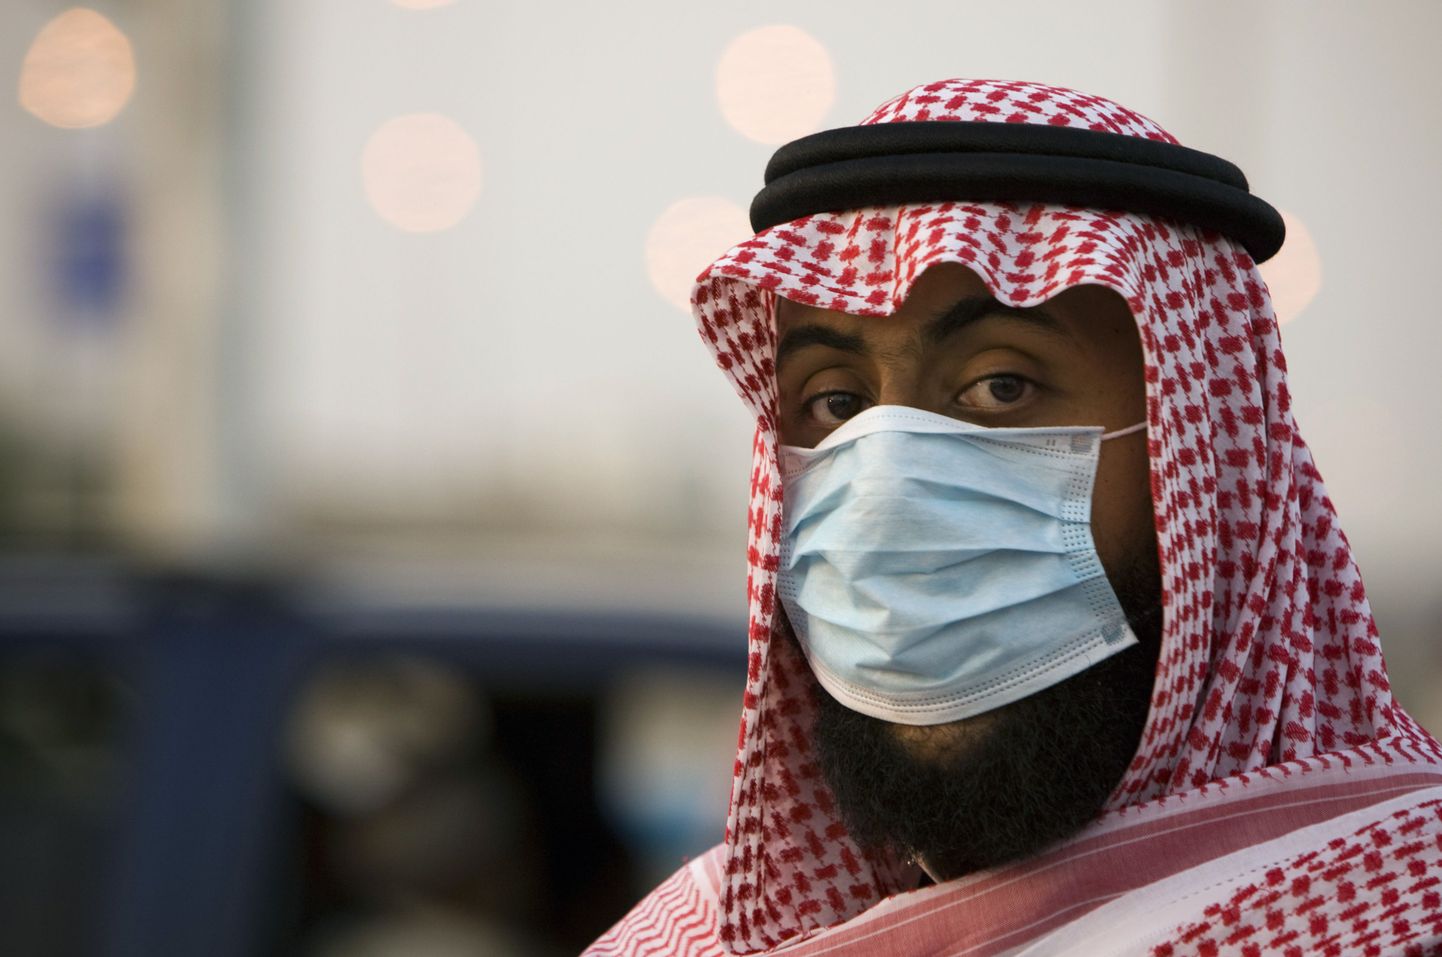 Saudi Araabias hukati 30 aastat hukkamist oodanud mees